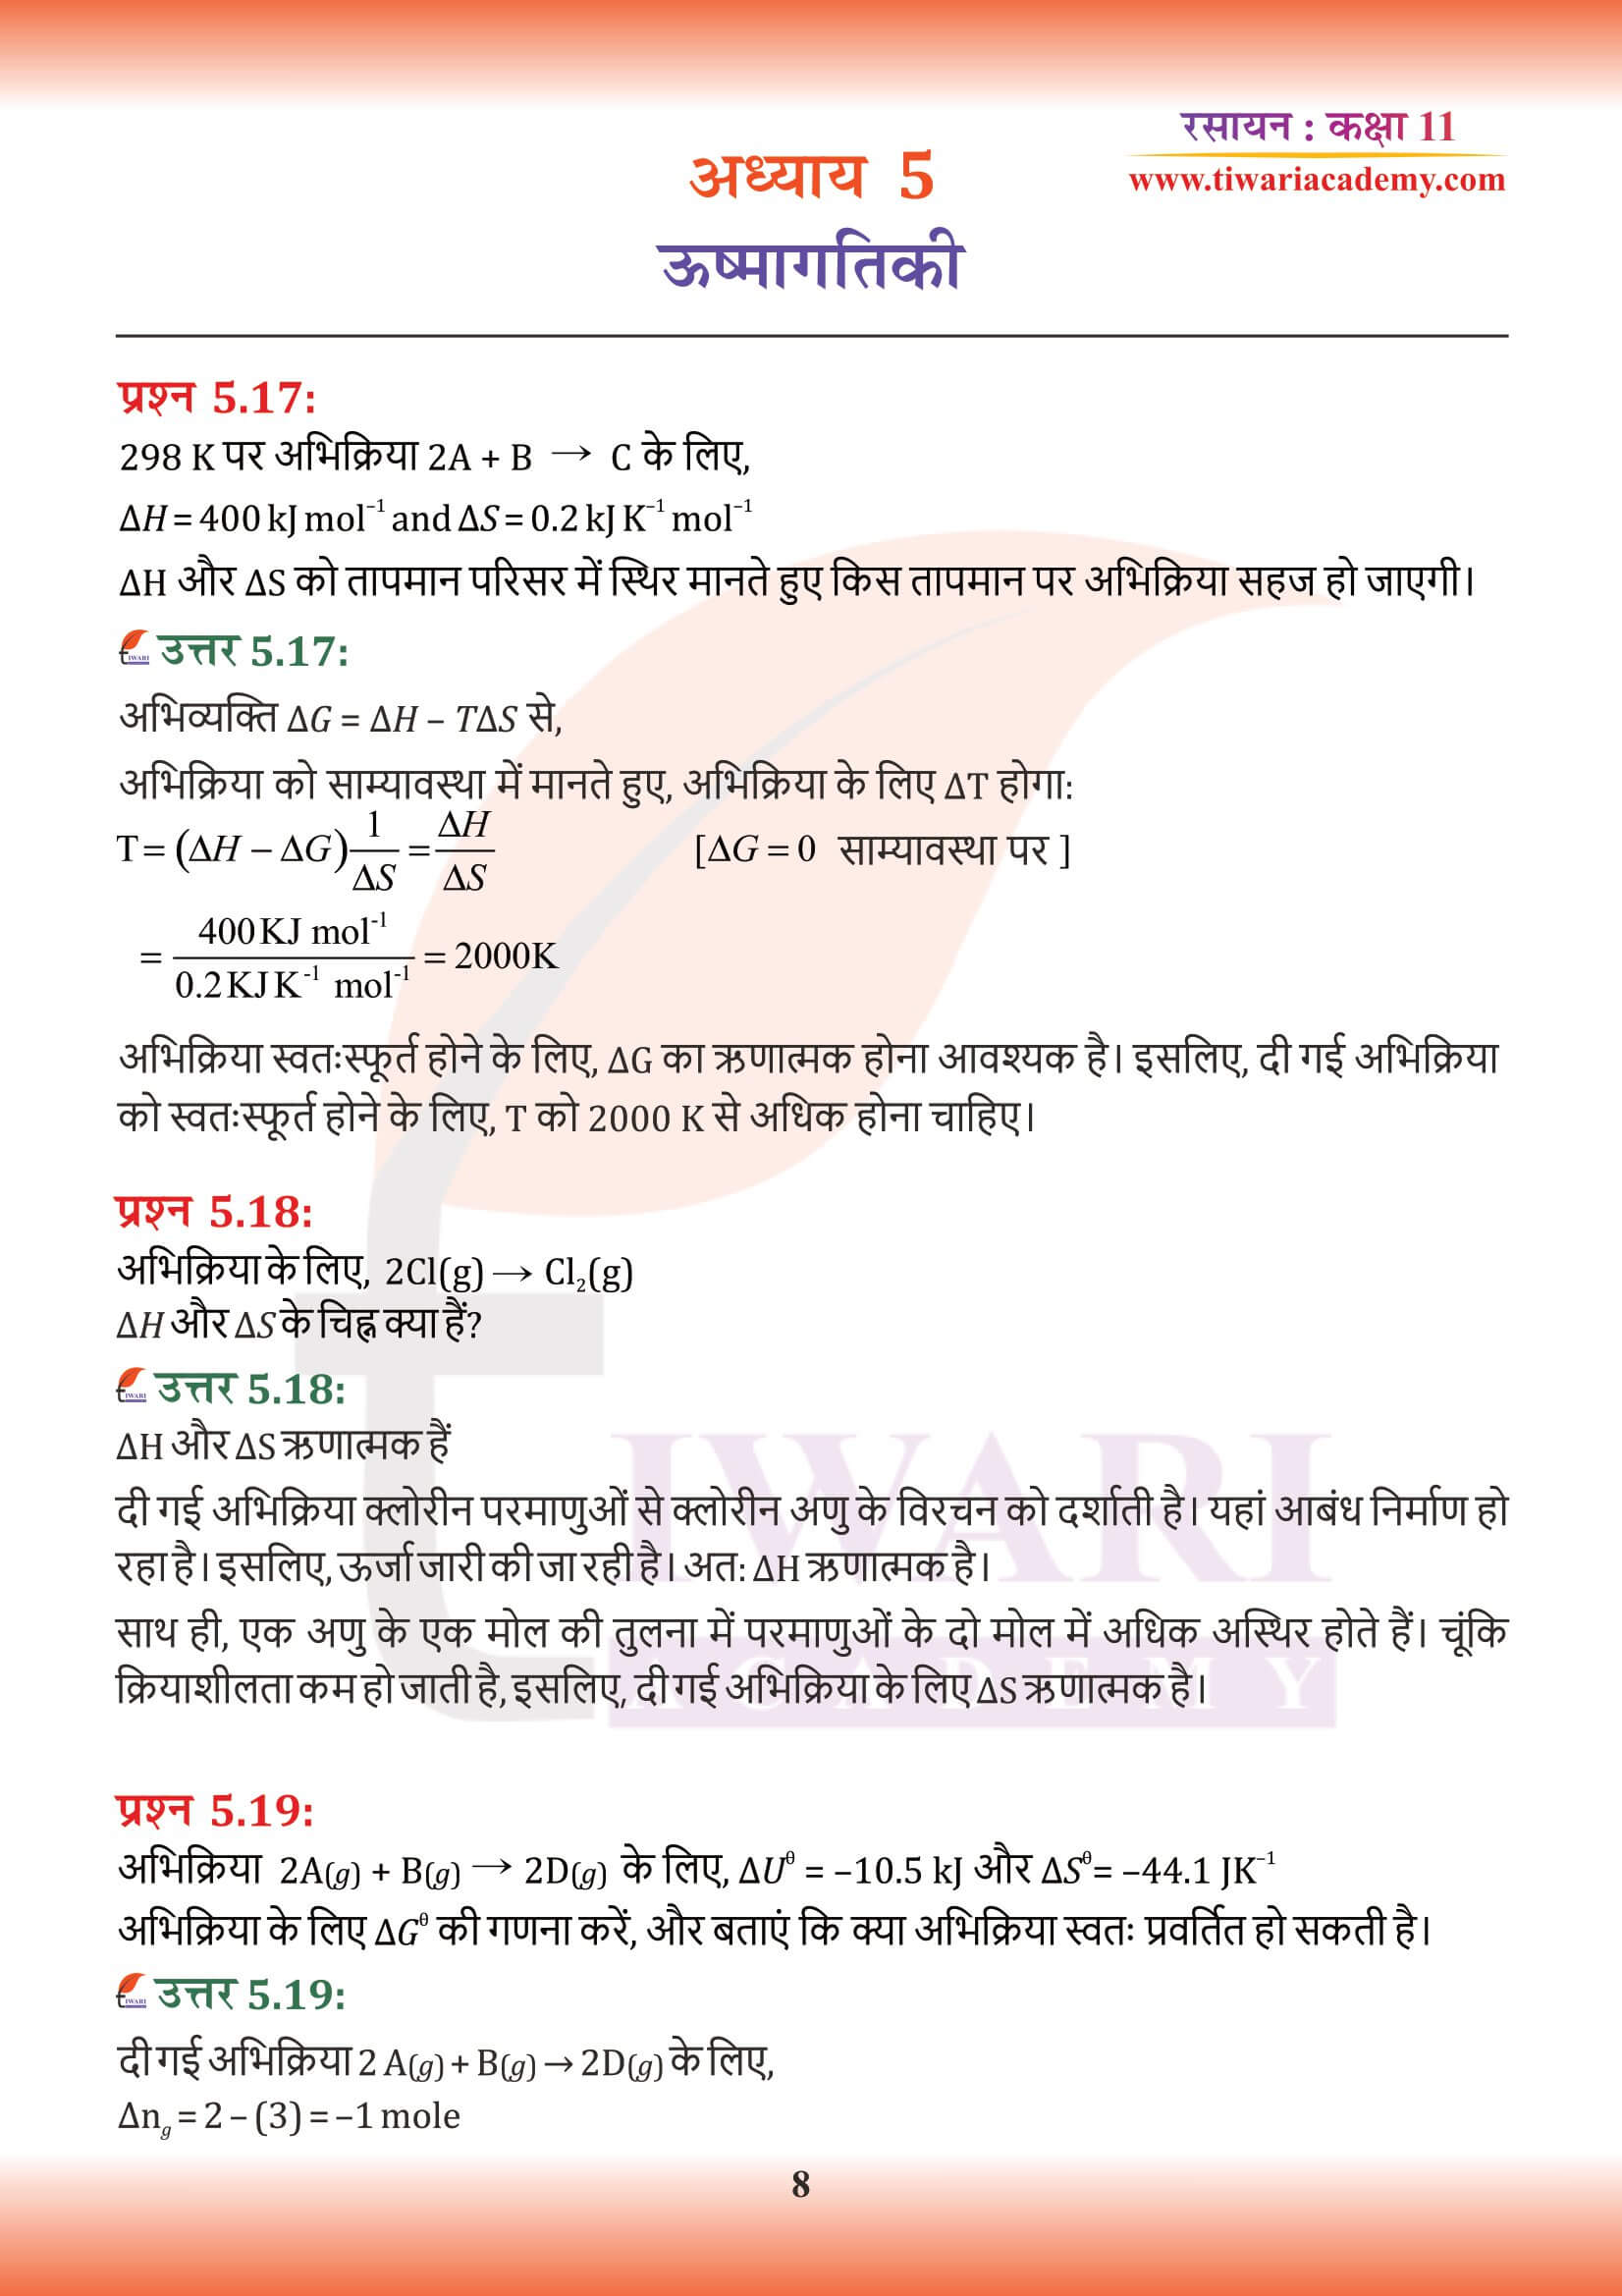 कक्षा 11 रसायन अध्याय 5 के हिंदी में उत्तर